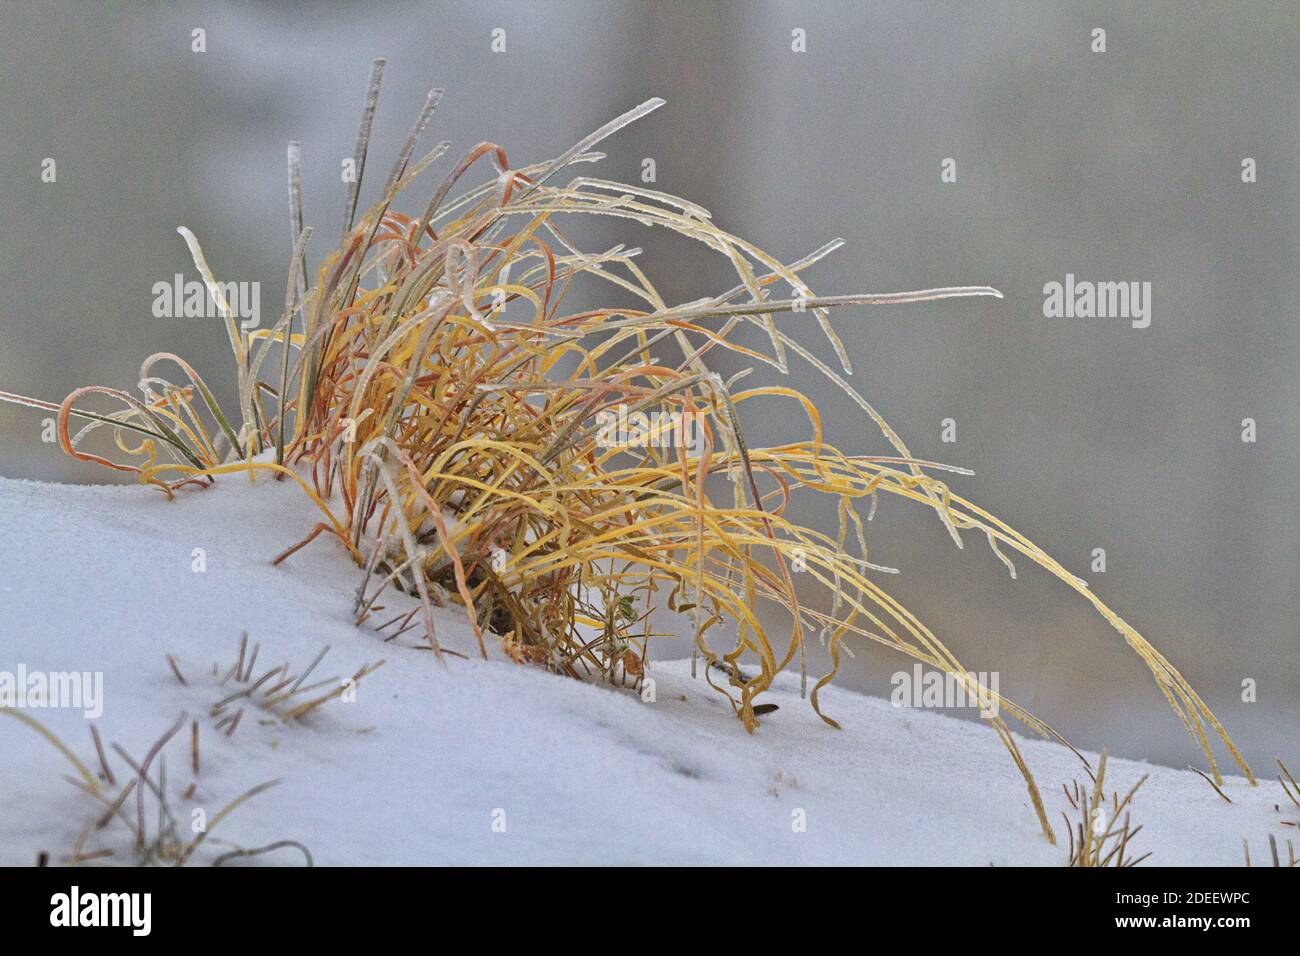 L'hiver touche la terre vue dans un virage gracieux d'or, herbe sèche enfermé dans la glace sur une couverture légère de neige poudreuse Banque D'Images